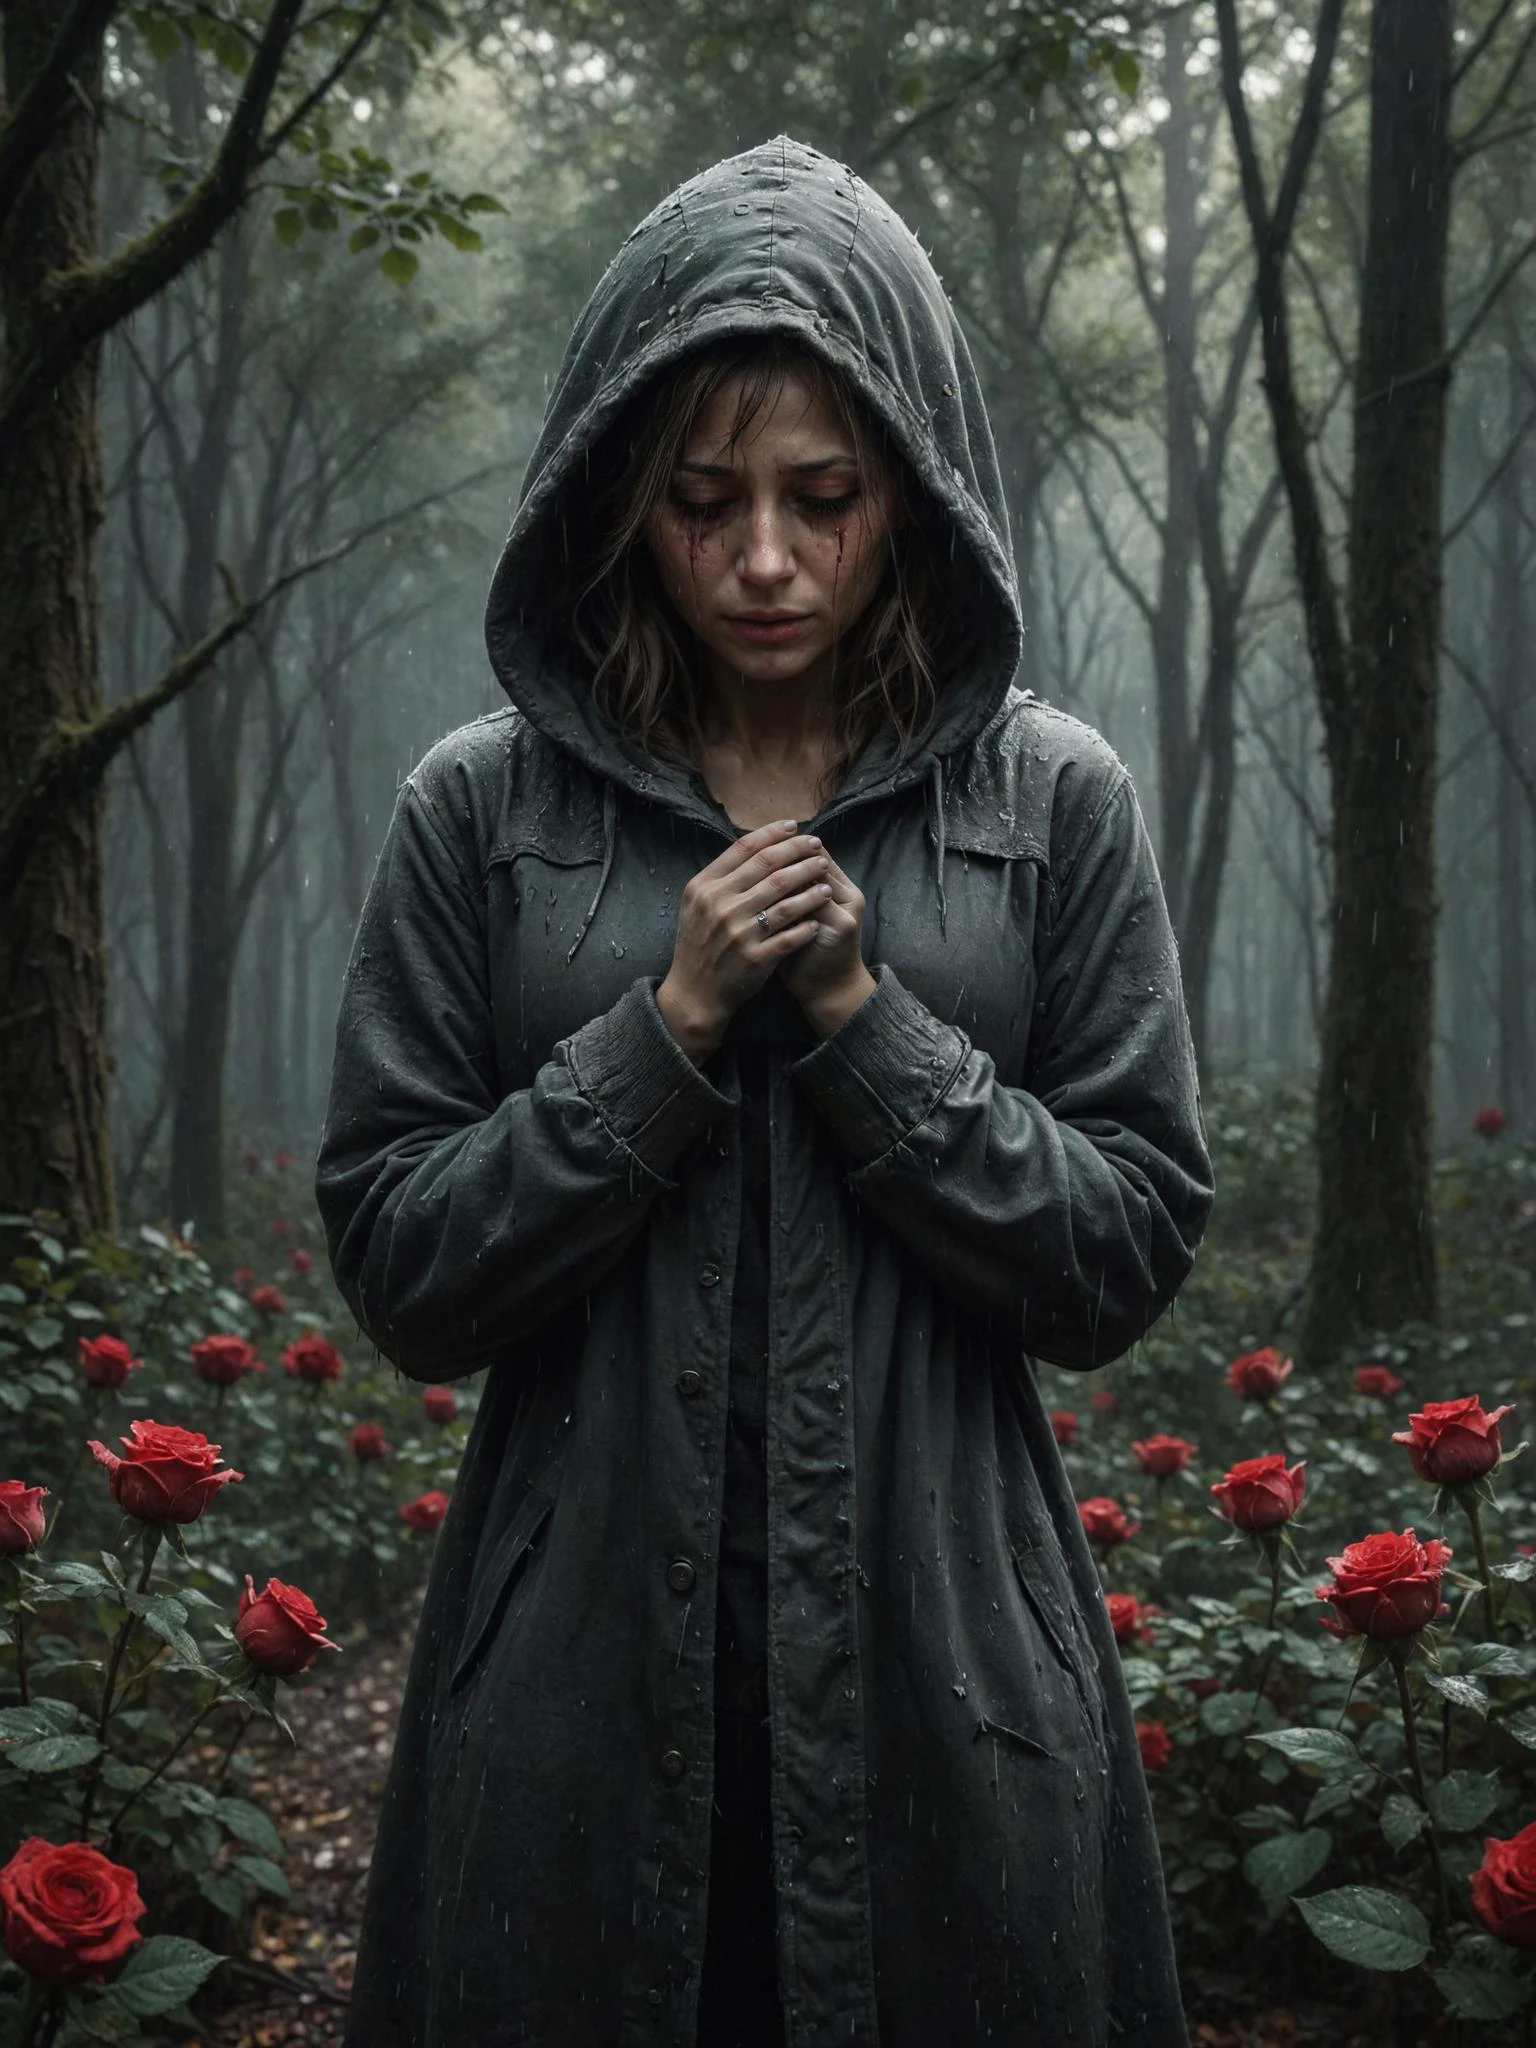 broken grief heart character плач, сцена скорби, большая часть красных роз, большинство деталей, дождливая погода, в темном лесу, 32К, UHD, HDR, плач, слезы, носить пальто с капюшоном, Айс-Абандз, (темная тема:1.2), Идеальные руки